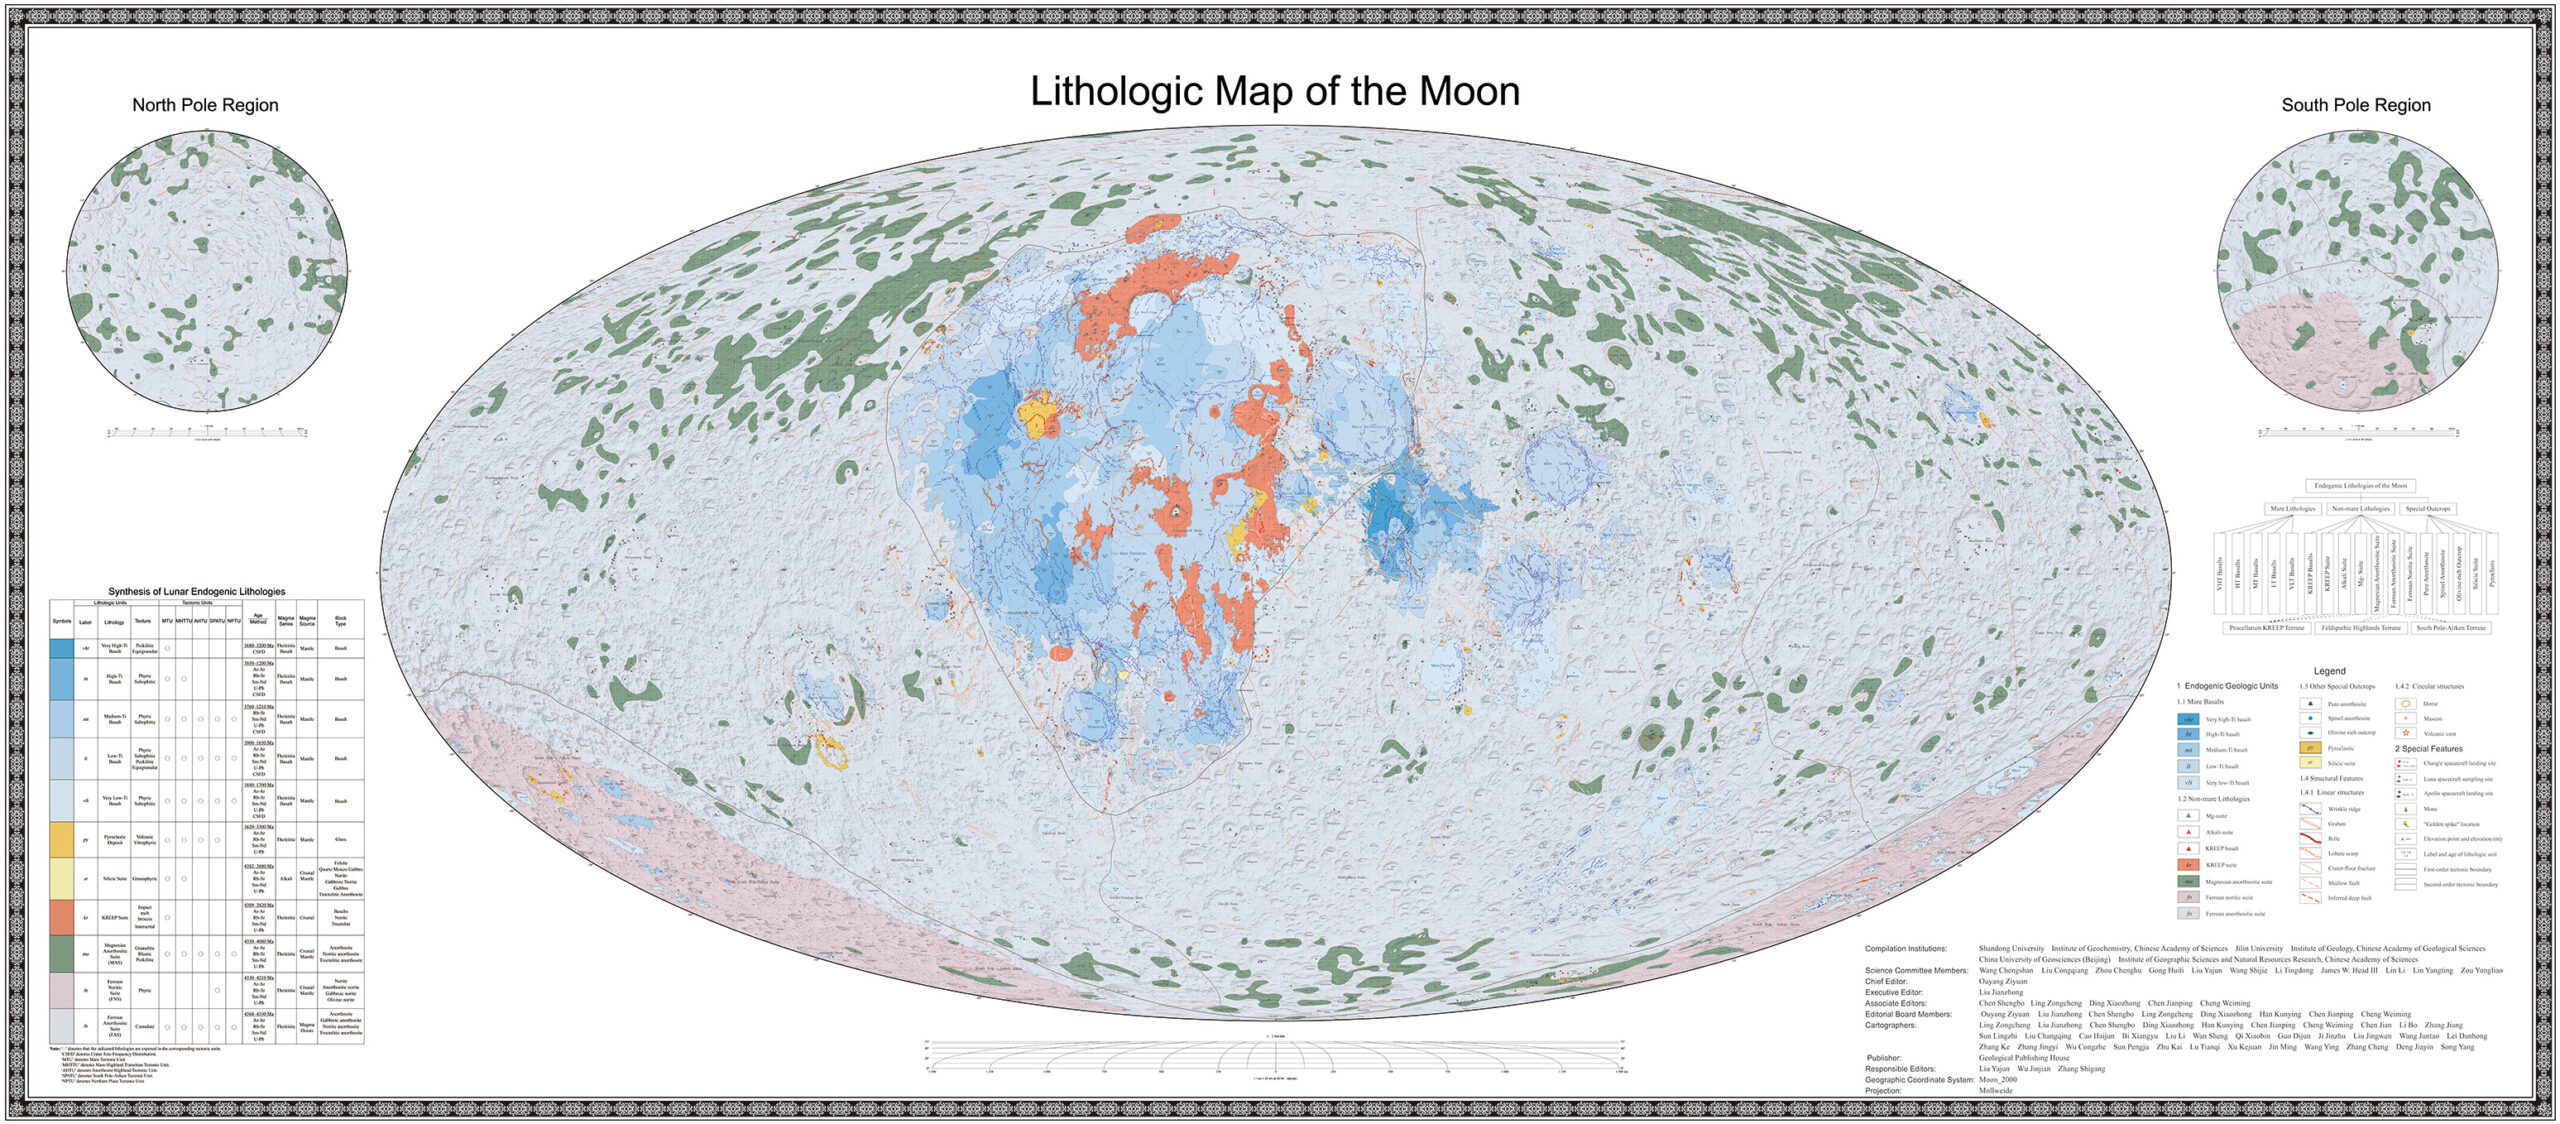 แผนที่ทางธรณีวิทยาของดวงจันทร์ (ภาพโดยสถาบันบัณฑิตวิทยาศาสตร์จีน จัดหาโดย Xinhua)